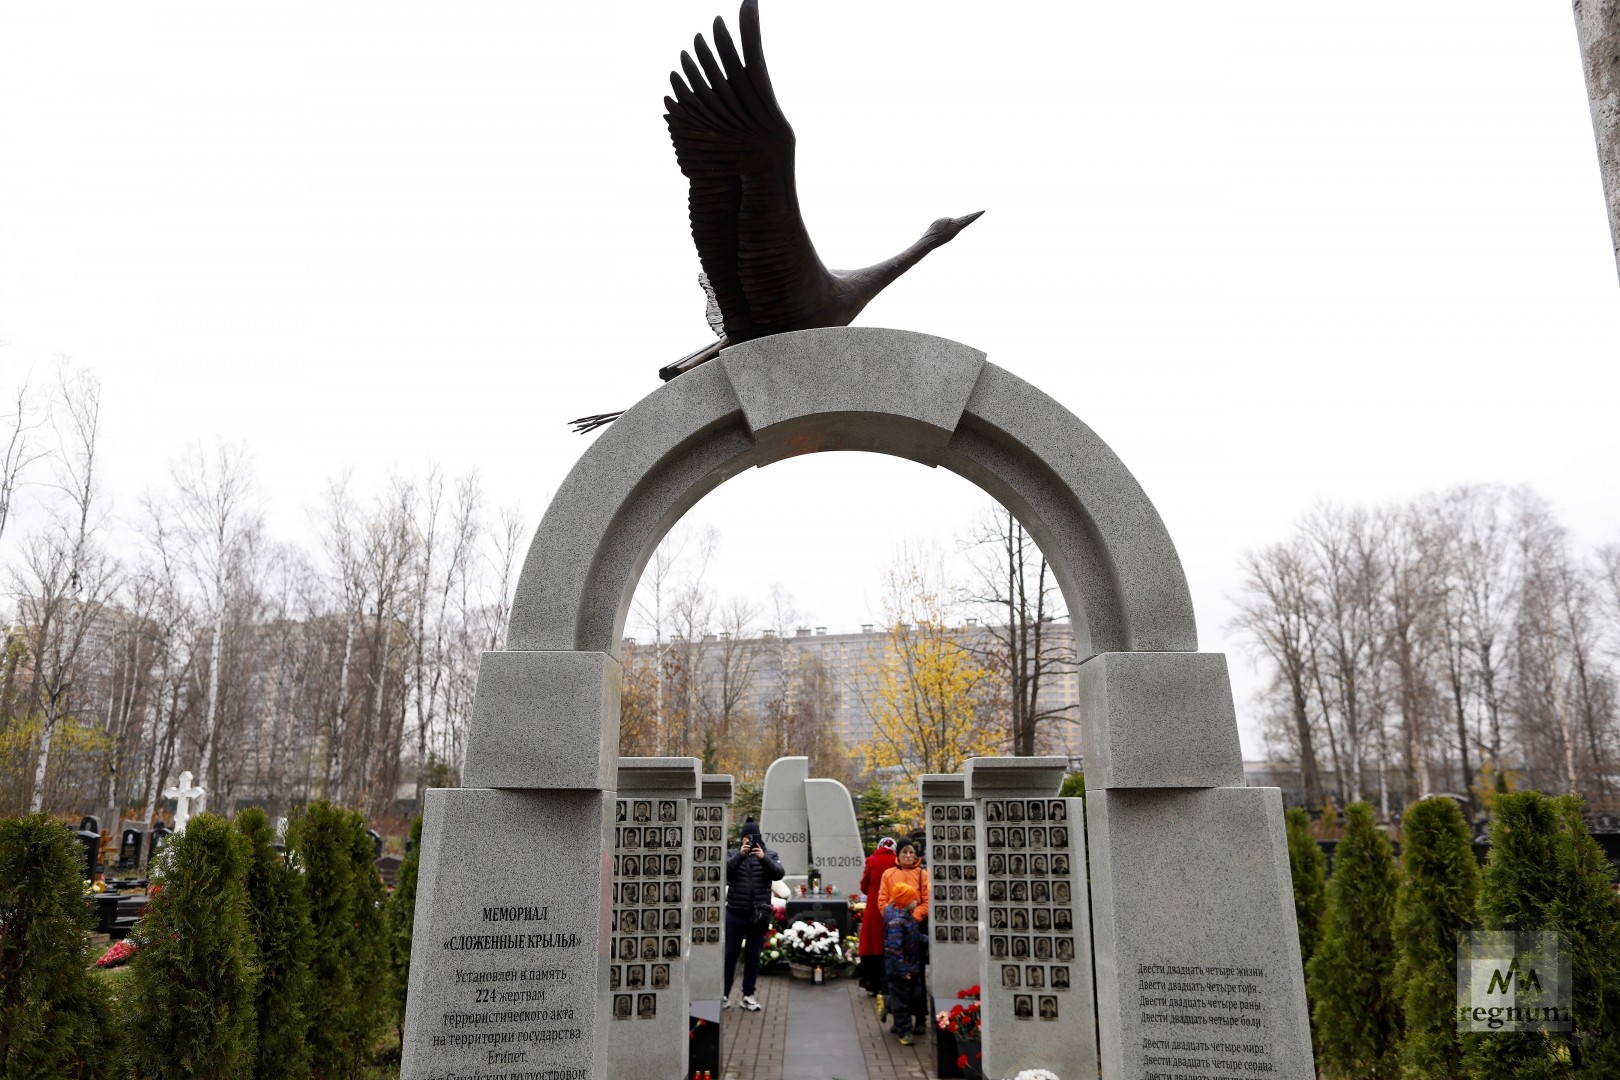 Мемориал «Сложенные крылья» на Серафимовском кладбище 